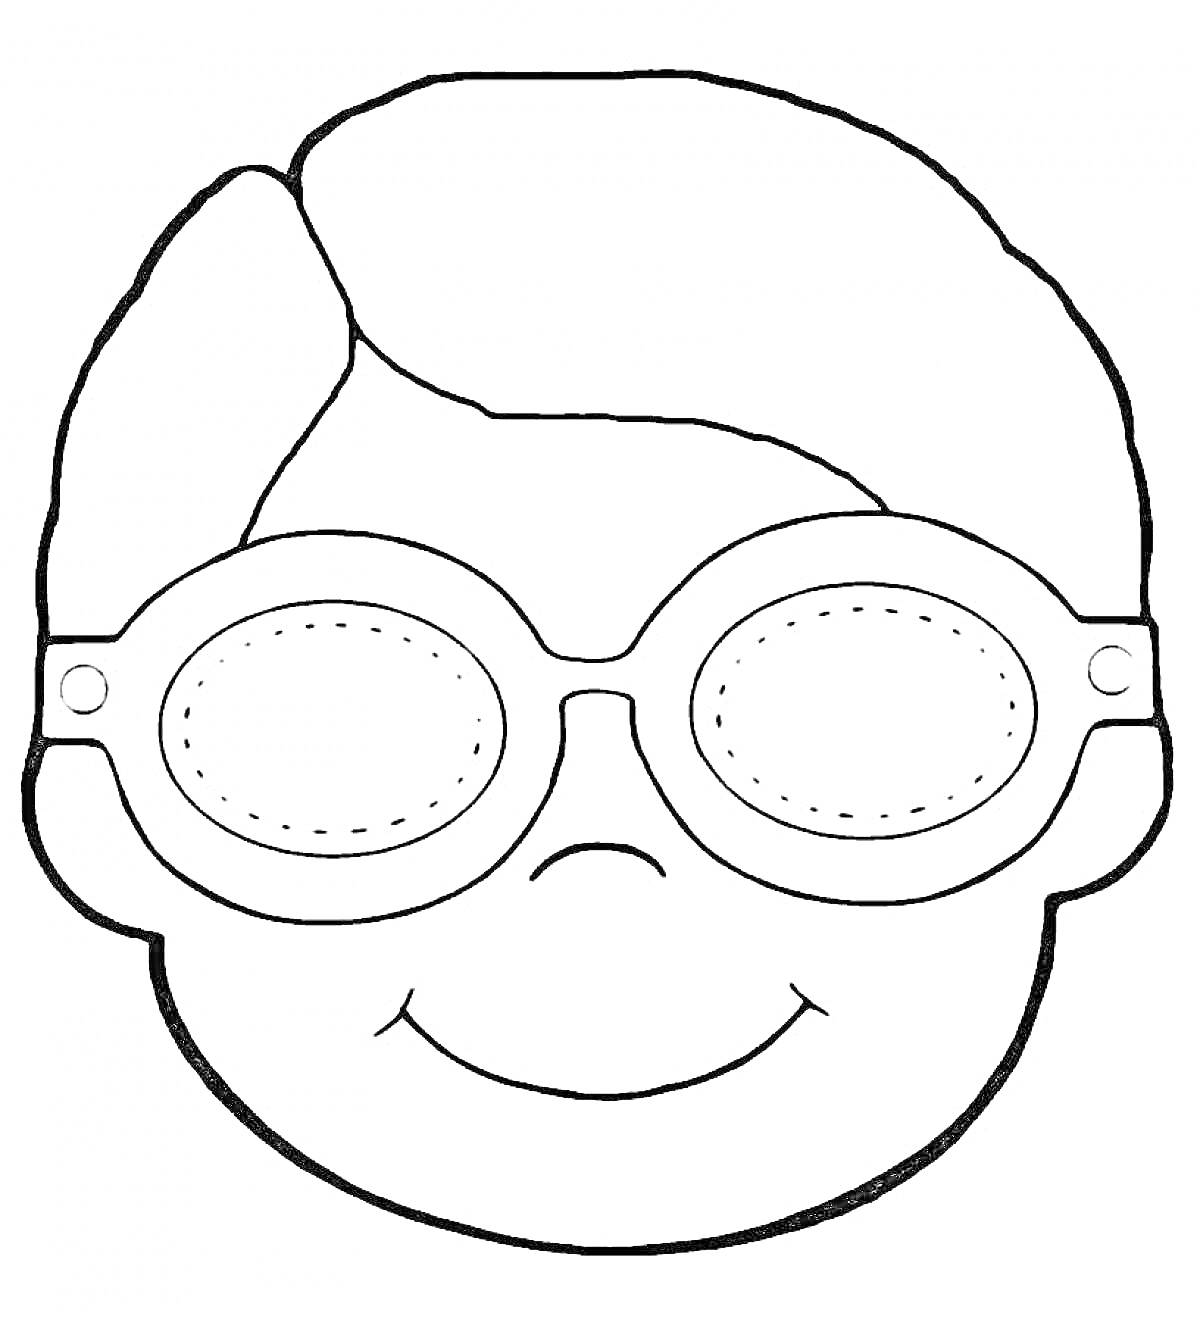 Раскраска Рисунок человека в очках с короткими волосами и улыбкой